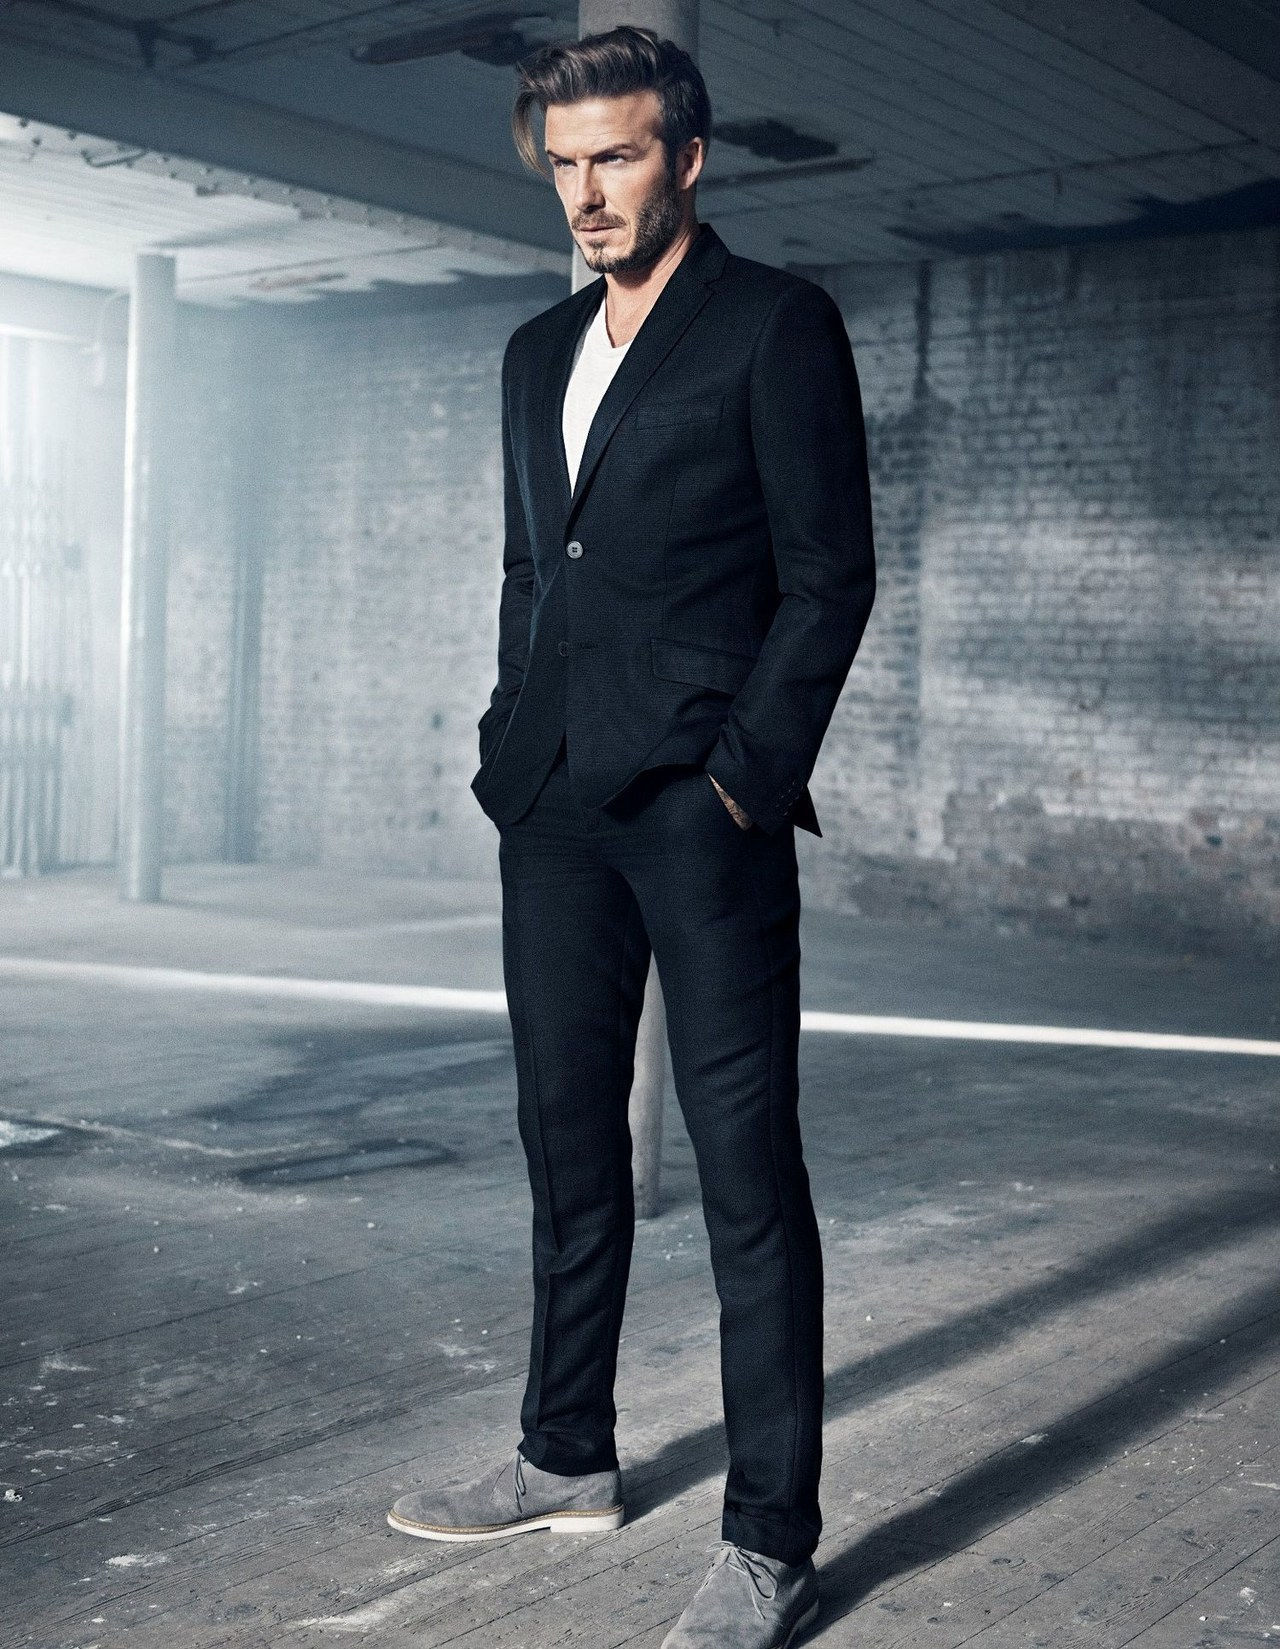 大卫 beckham HM campaign 2015 black suit